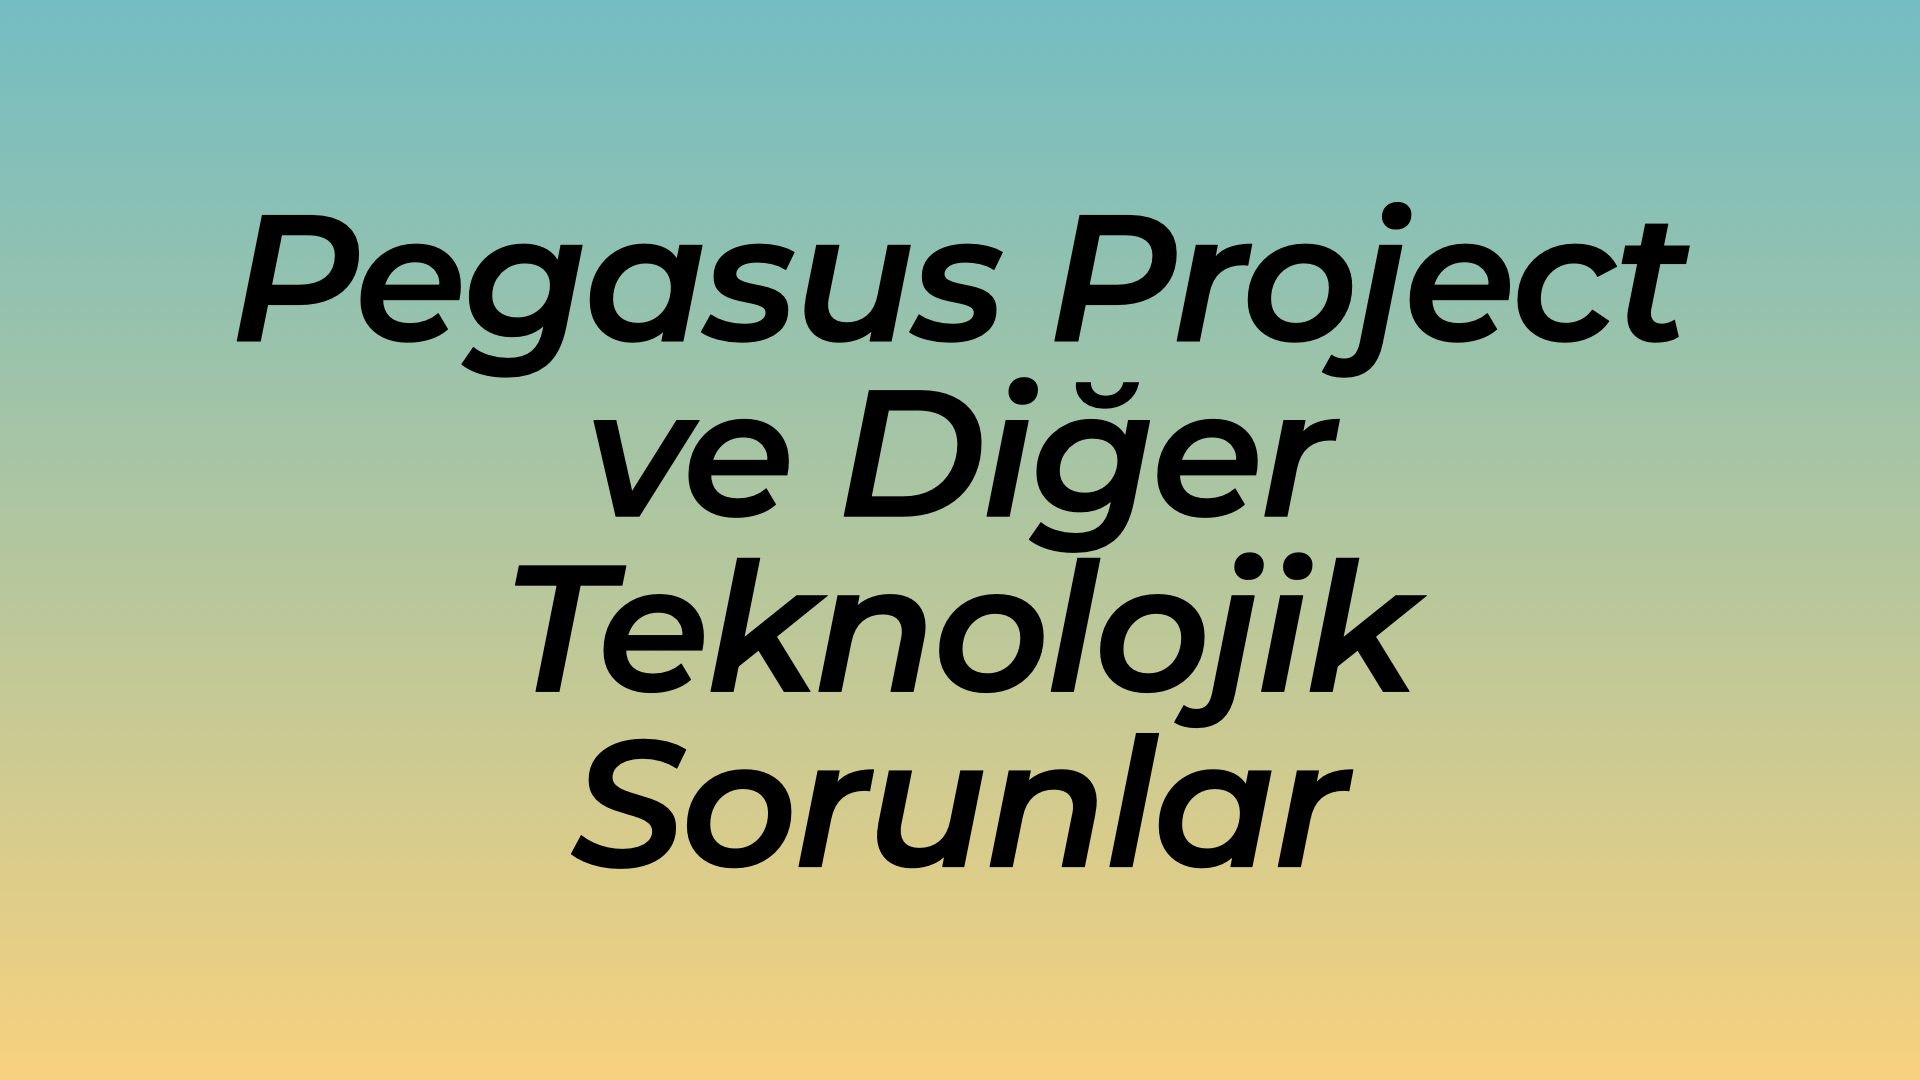 Pegasus Project ve Diğer Teknolojik Sorunlar